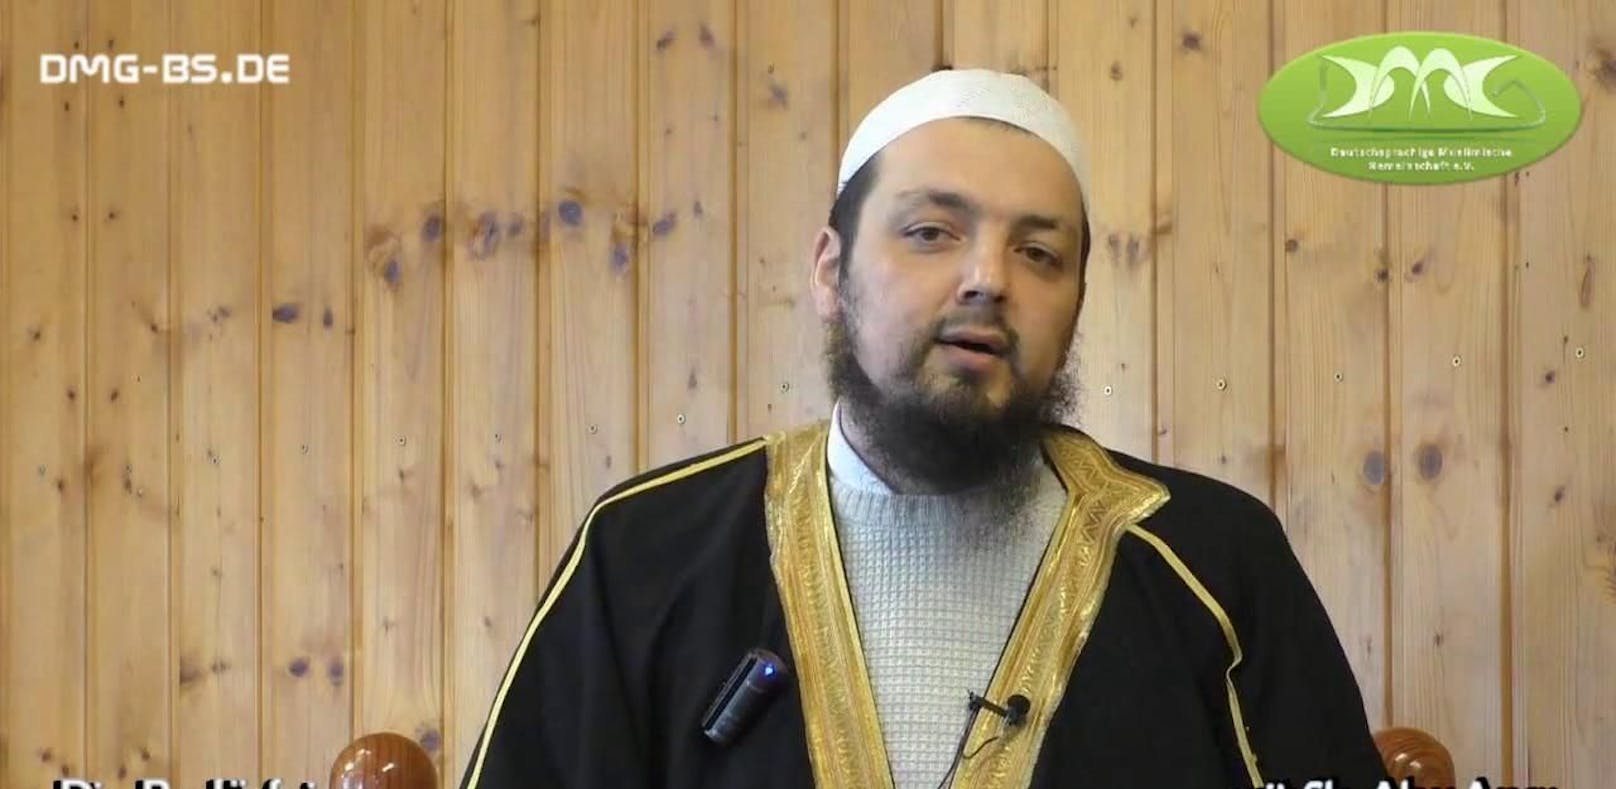 Der radikal-islamistische Prediger Sheikh Abu Anas wurde nach Wels eingeladen.